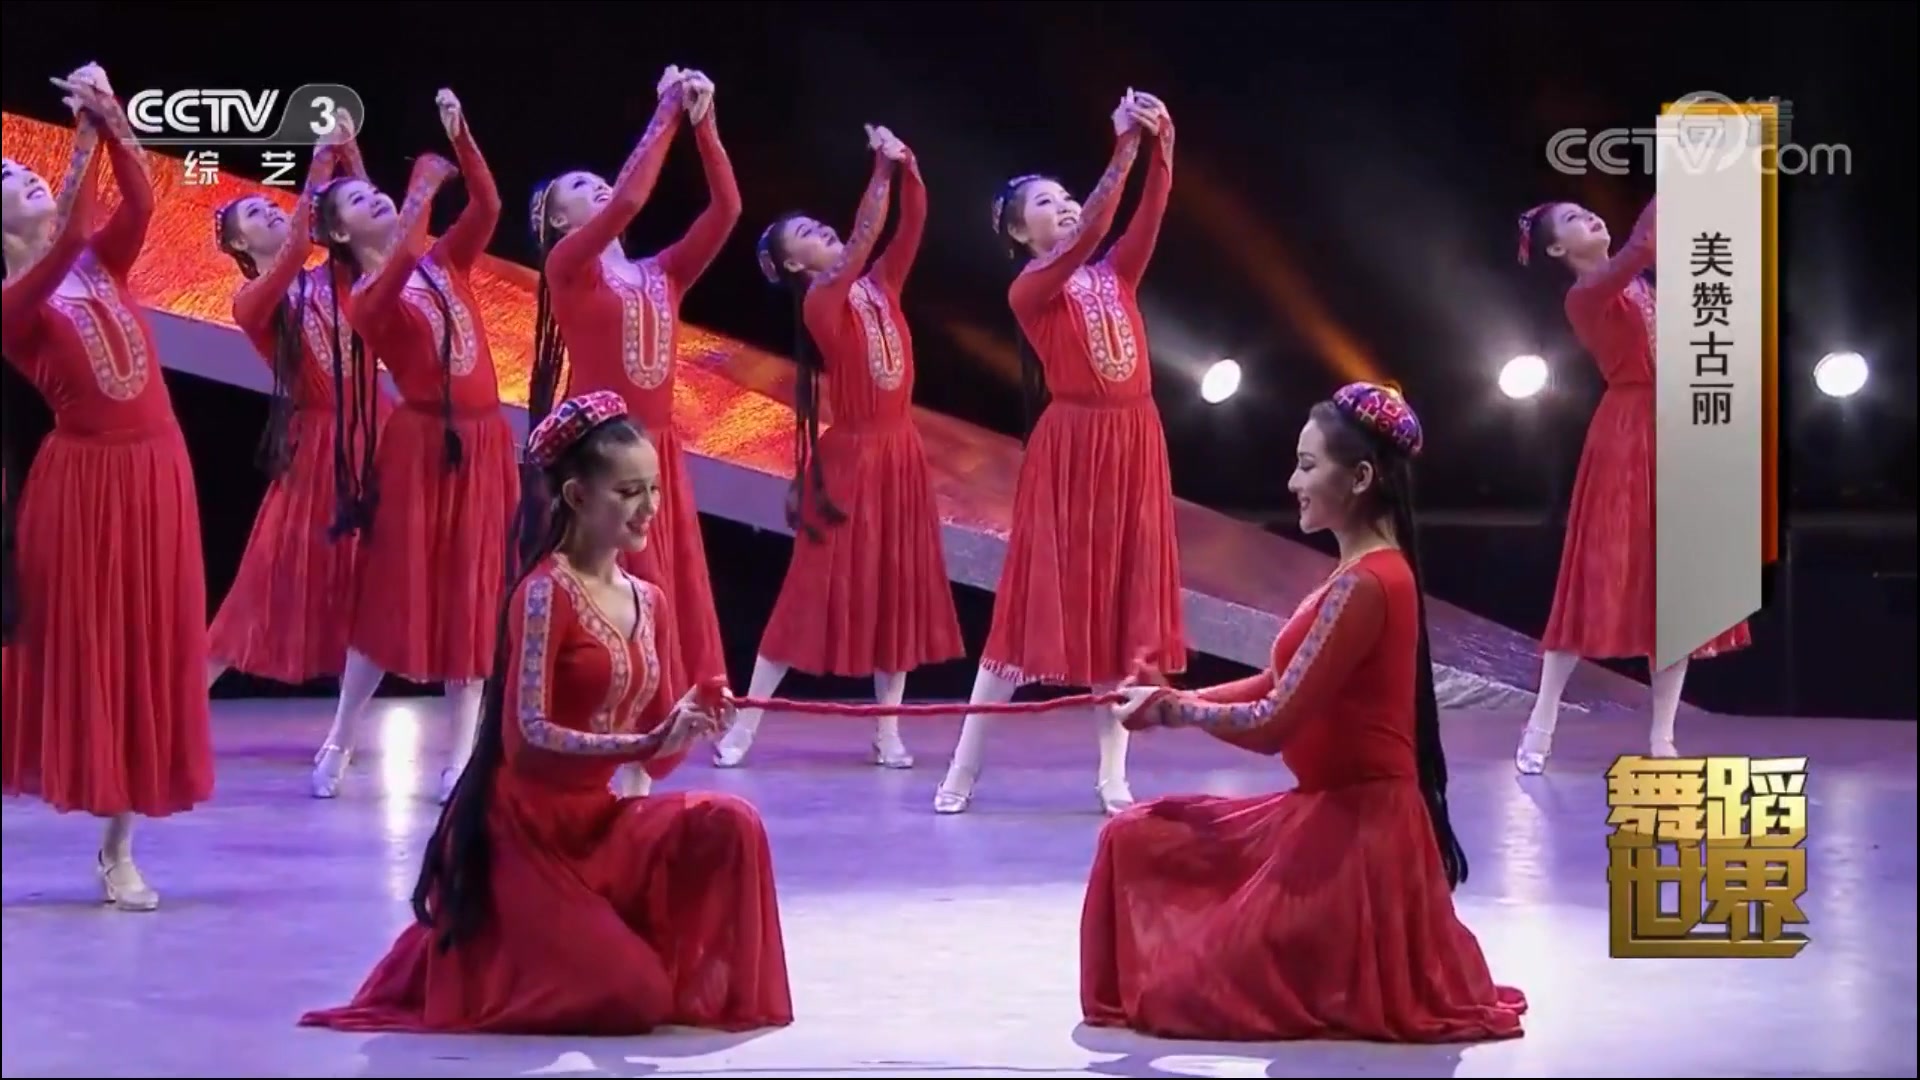 古丽米娜 中国好舞蹈 海选新疆舞表演-bilibili(B站)无水印视频解析——YIUIOS易柚斯